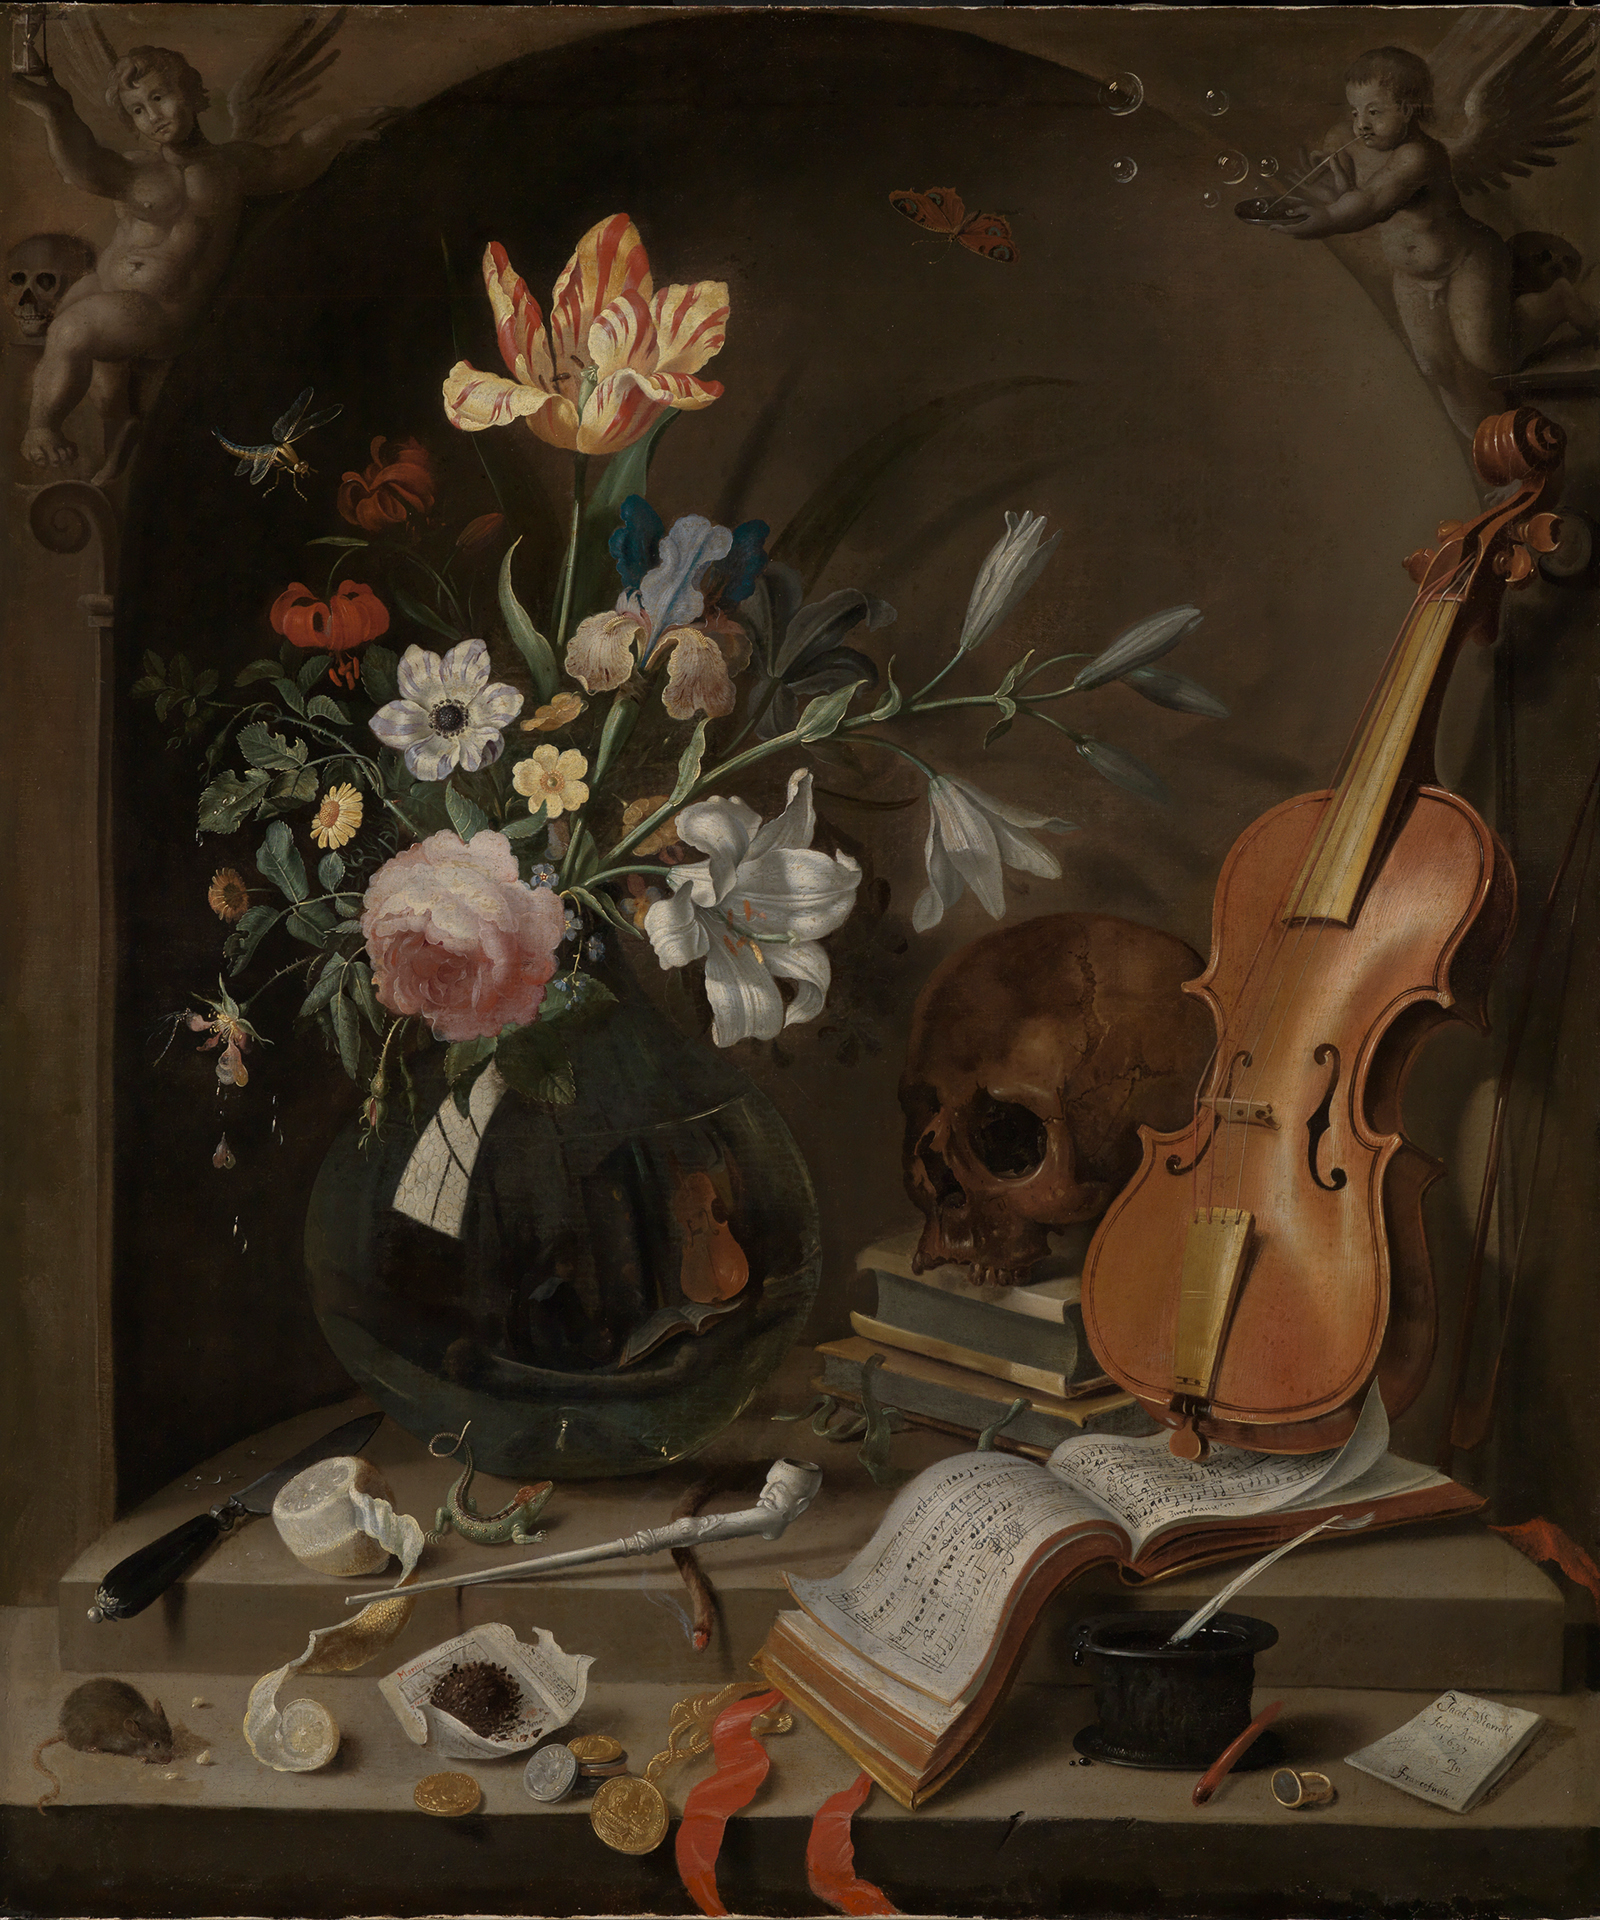 Das Vanitas-Stillleben von Jacob Marrel zeigt neben einem Blumenarrangement u.a. eine Geige, einen Totenkopf und Insekten